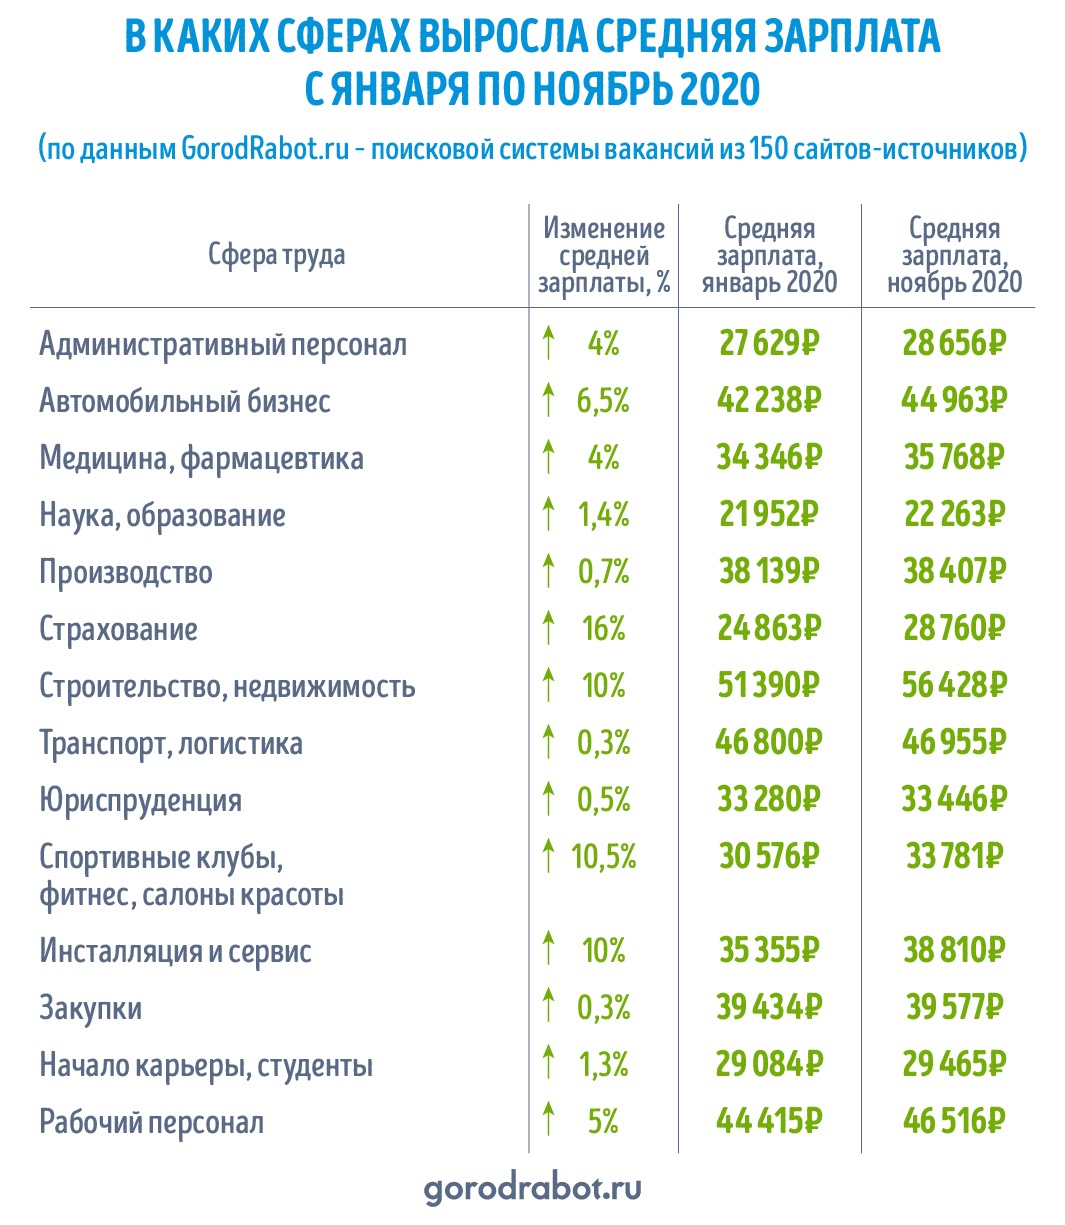 Средняя зарплата в россии составляет. Средняя заработная плата в России 2020 году. Средняя заработная плата в РФ 2020 Росстат. Средняя заработная плата по России в 2020. Средняя зарплата в России 2020.